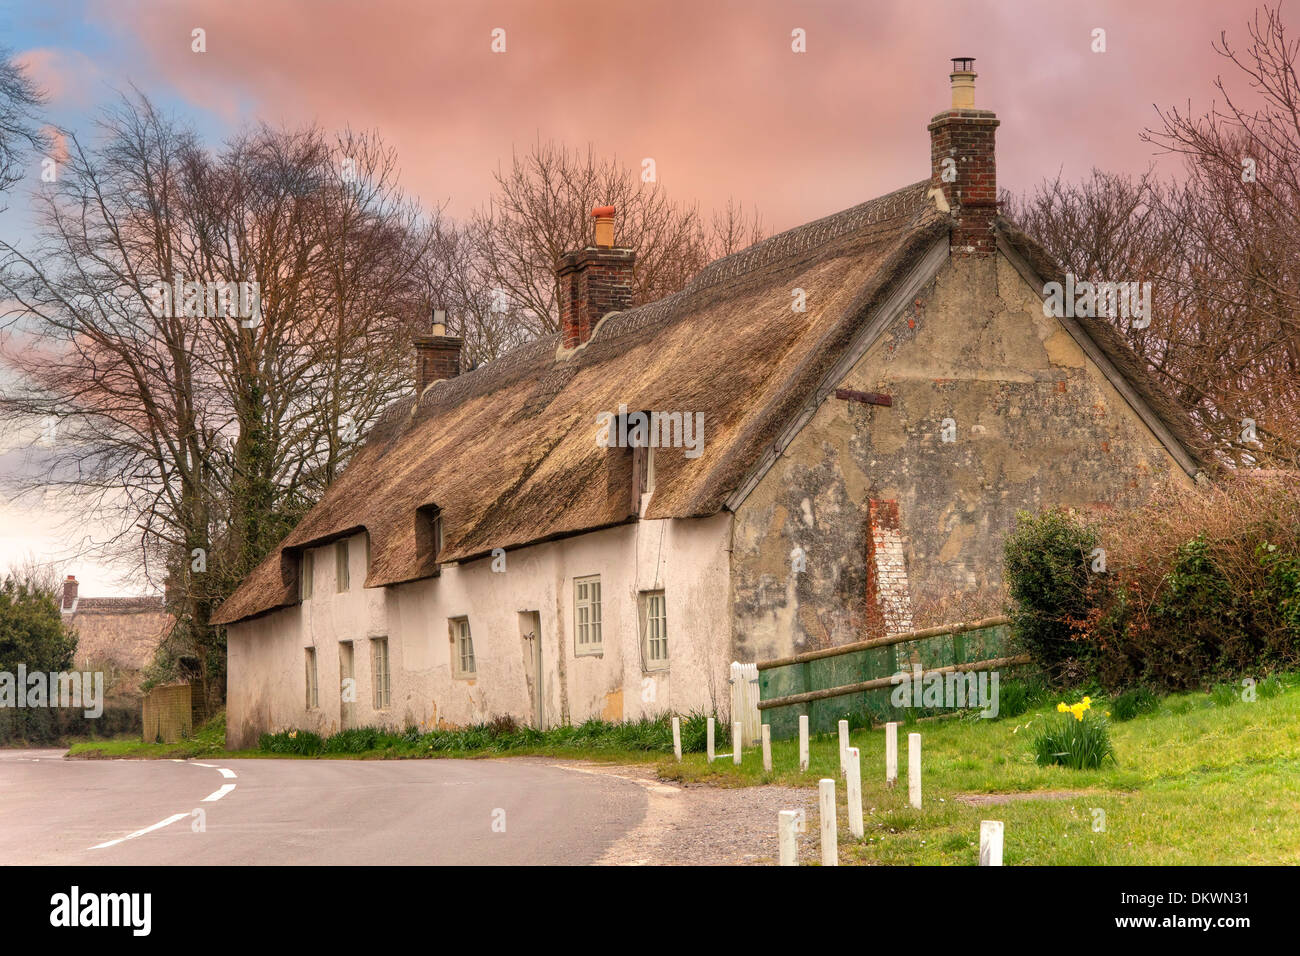 Ligne de blanc, mitoyenne cottages aux toits de chaume, Dorset, Angleterre. Banque D'Images